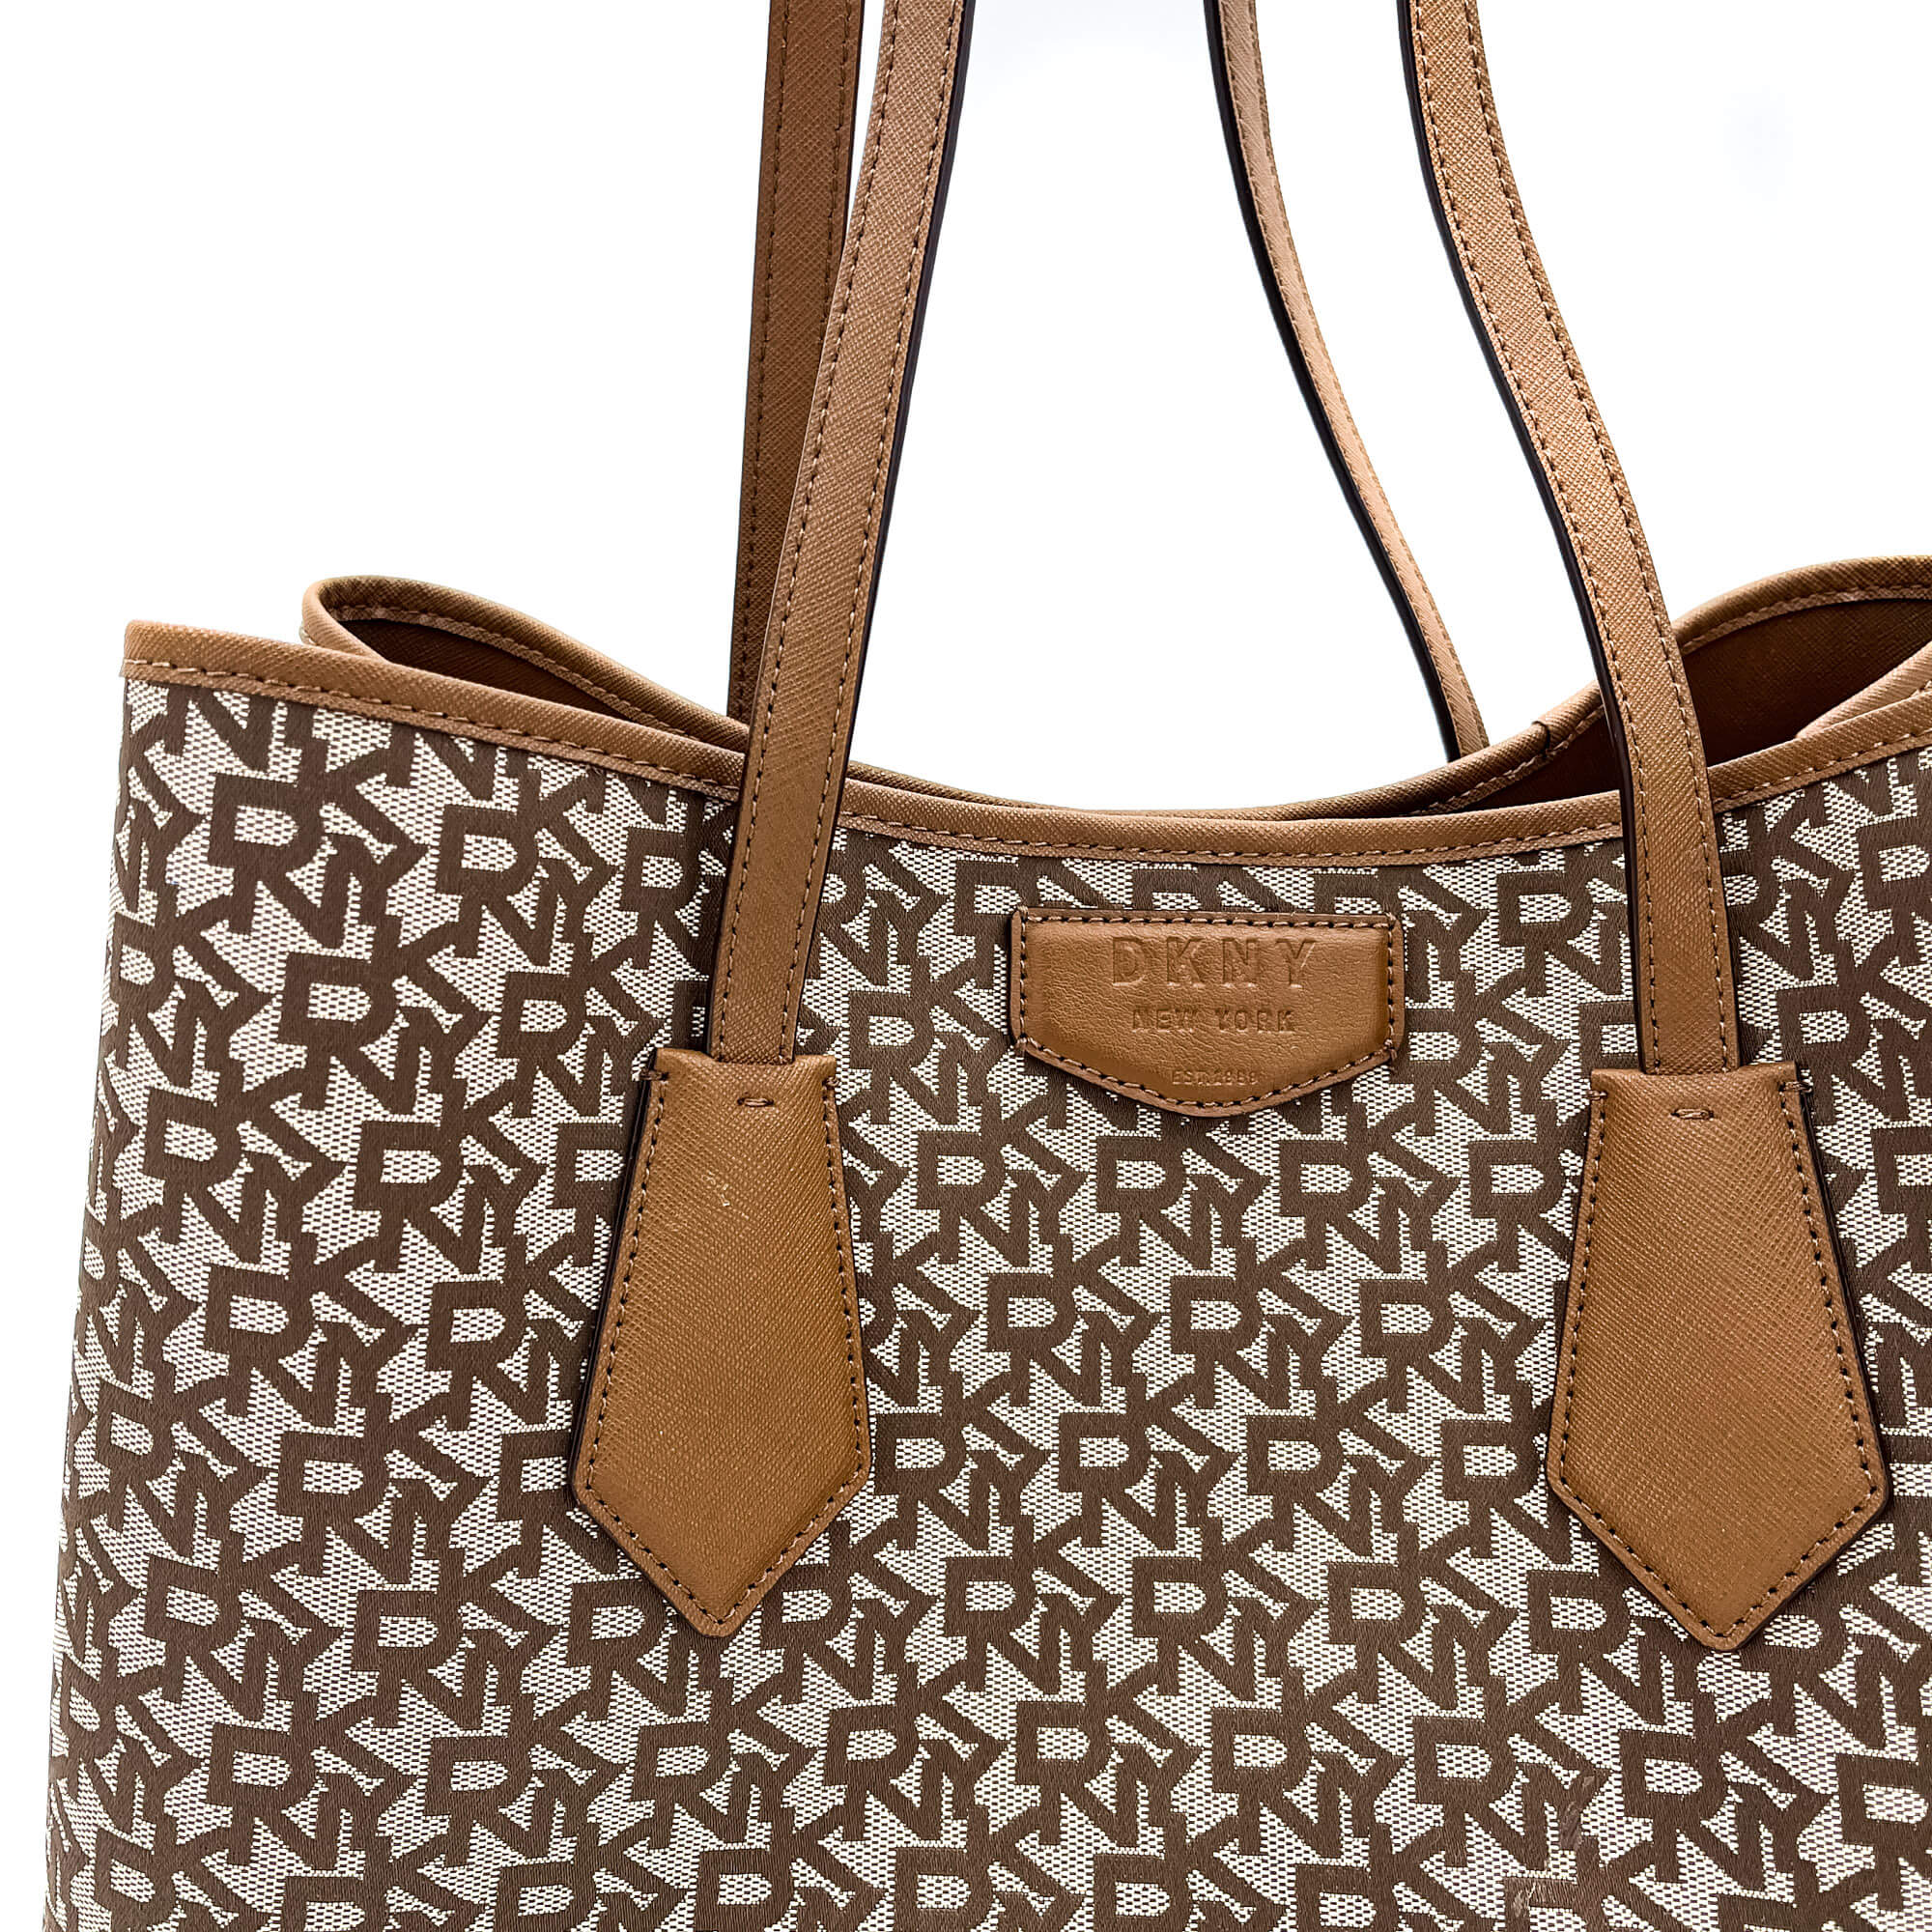 Women DKNY Bags for Sale in Kuwait - Handbags, Crossbody Bags : Ladies Purse  | OpenSooq